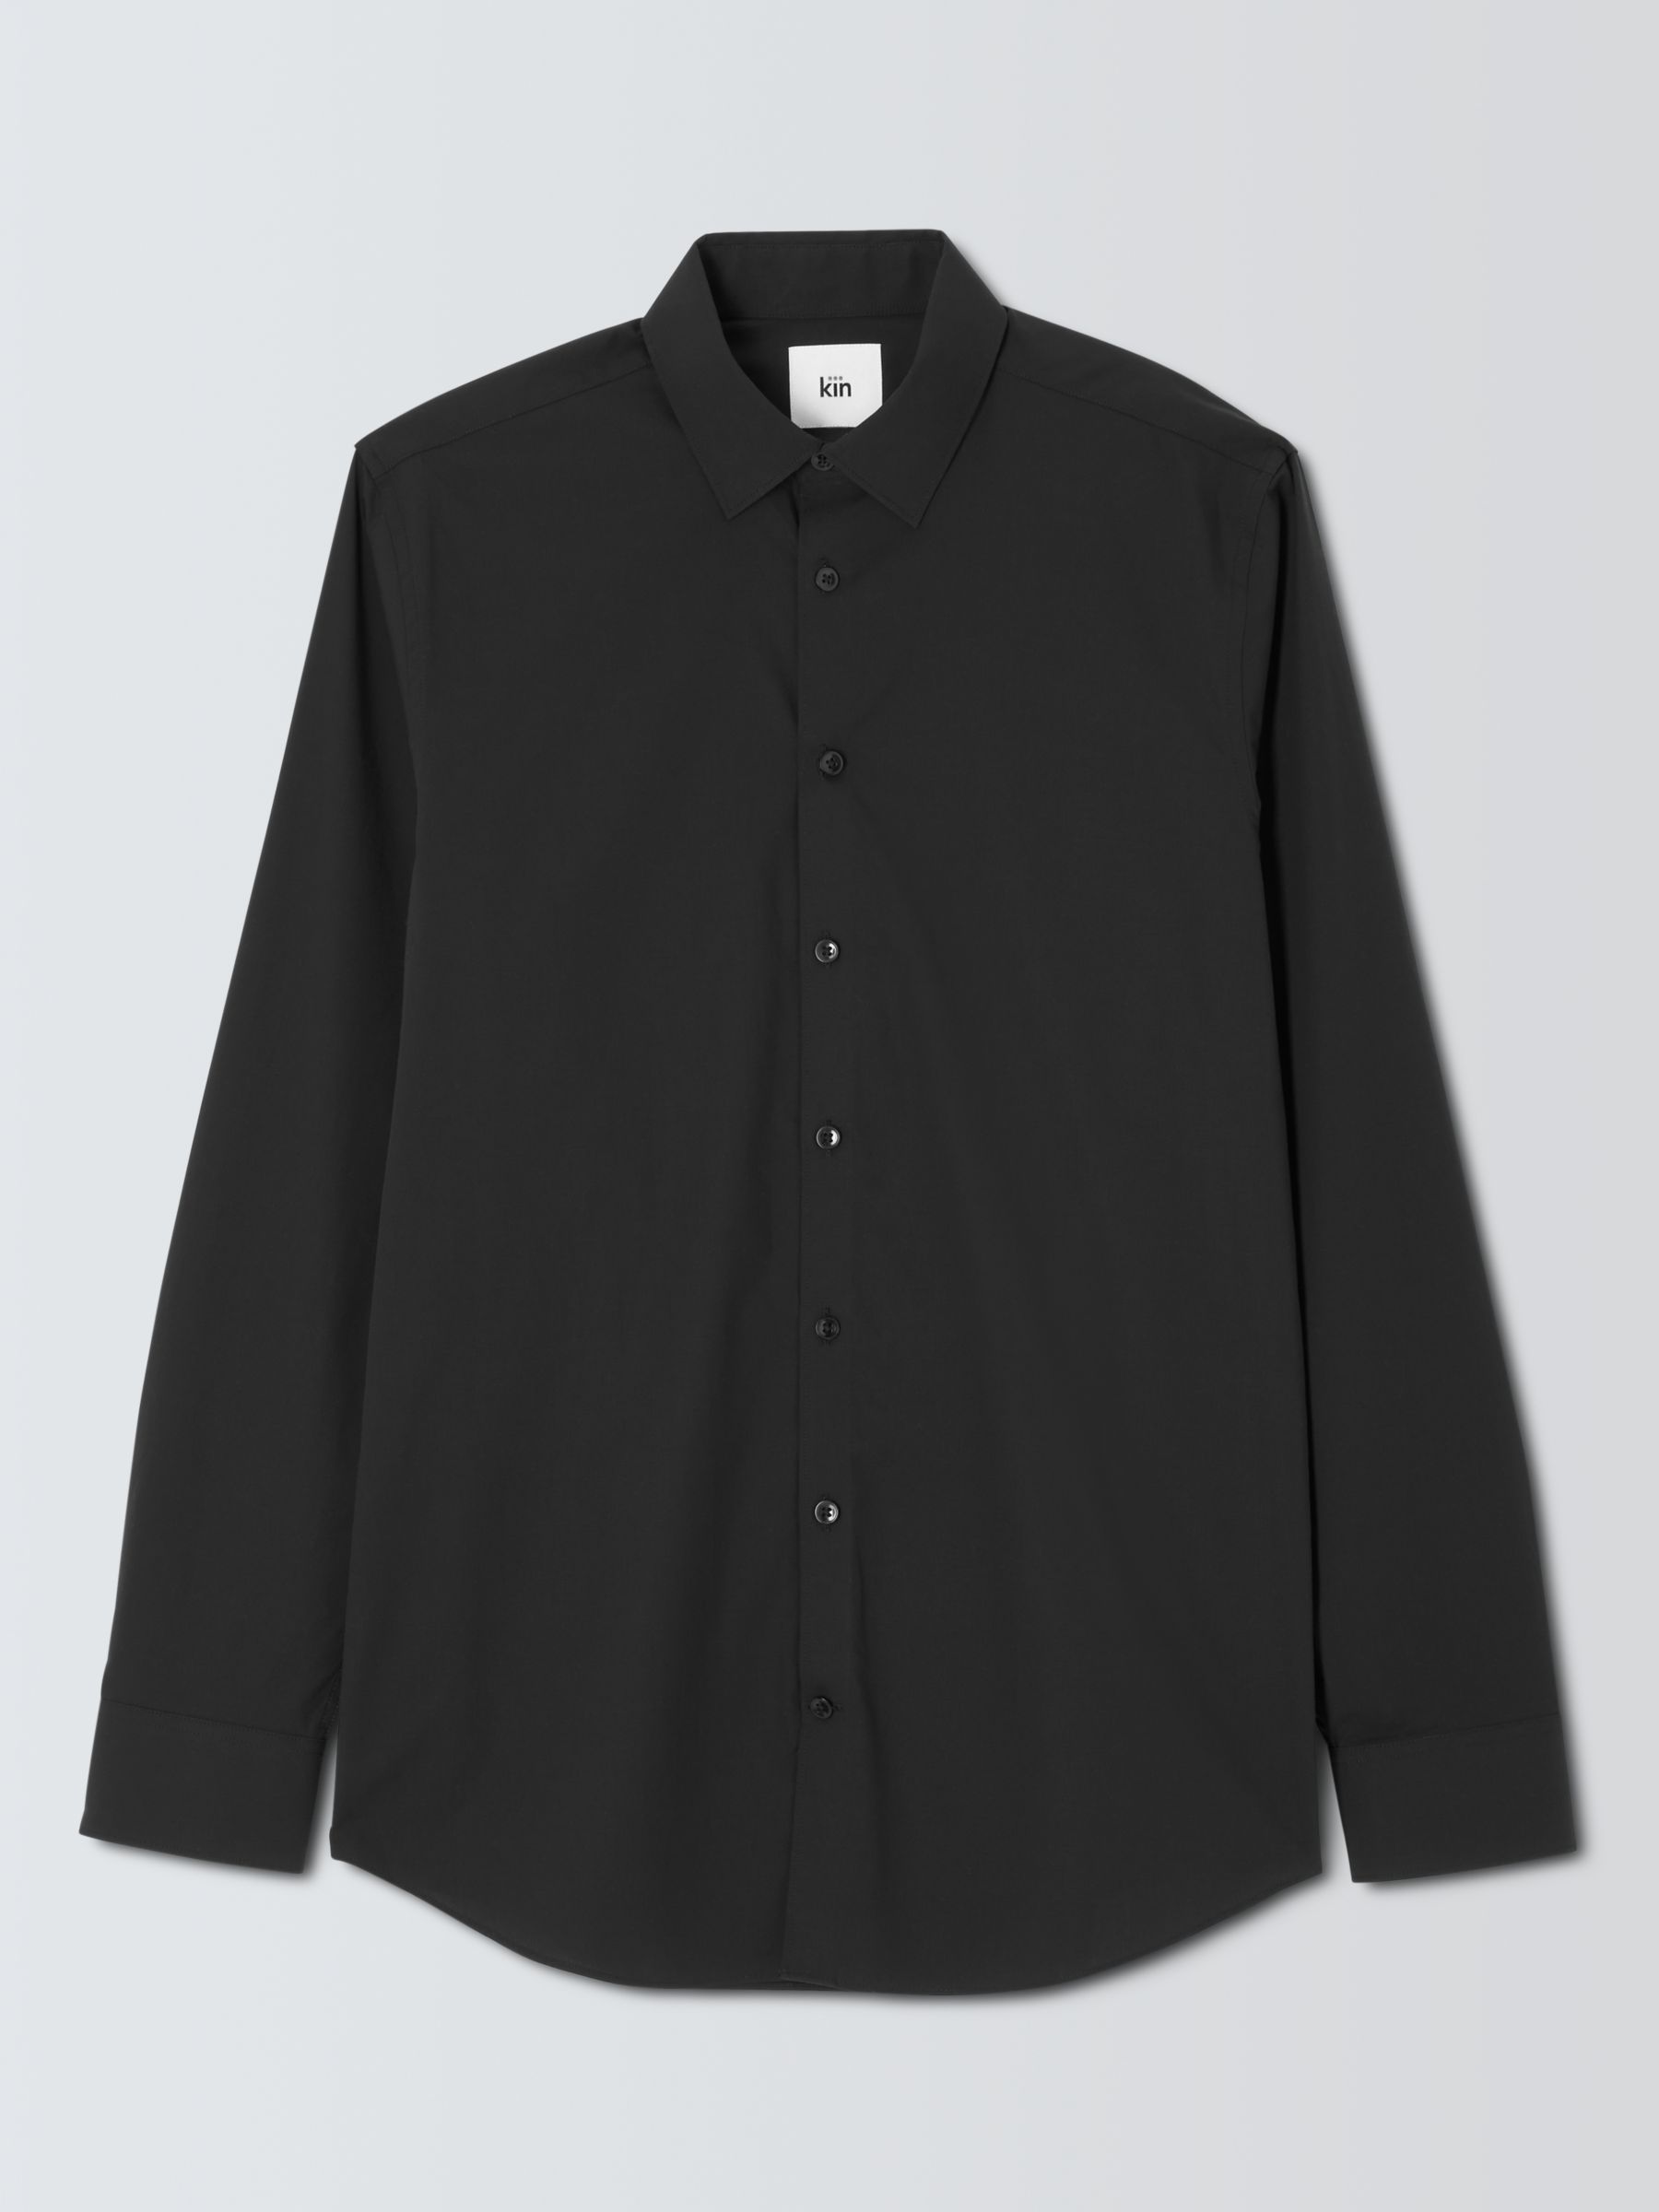 Kin Stretch Poplin Slim Fit Shirt, Black at John Lewis & Partners